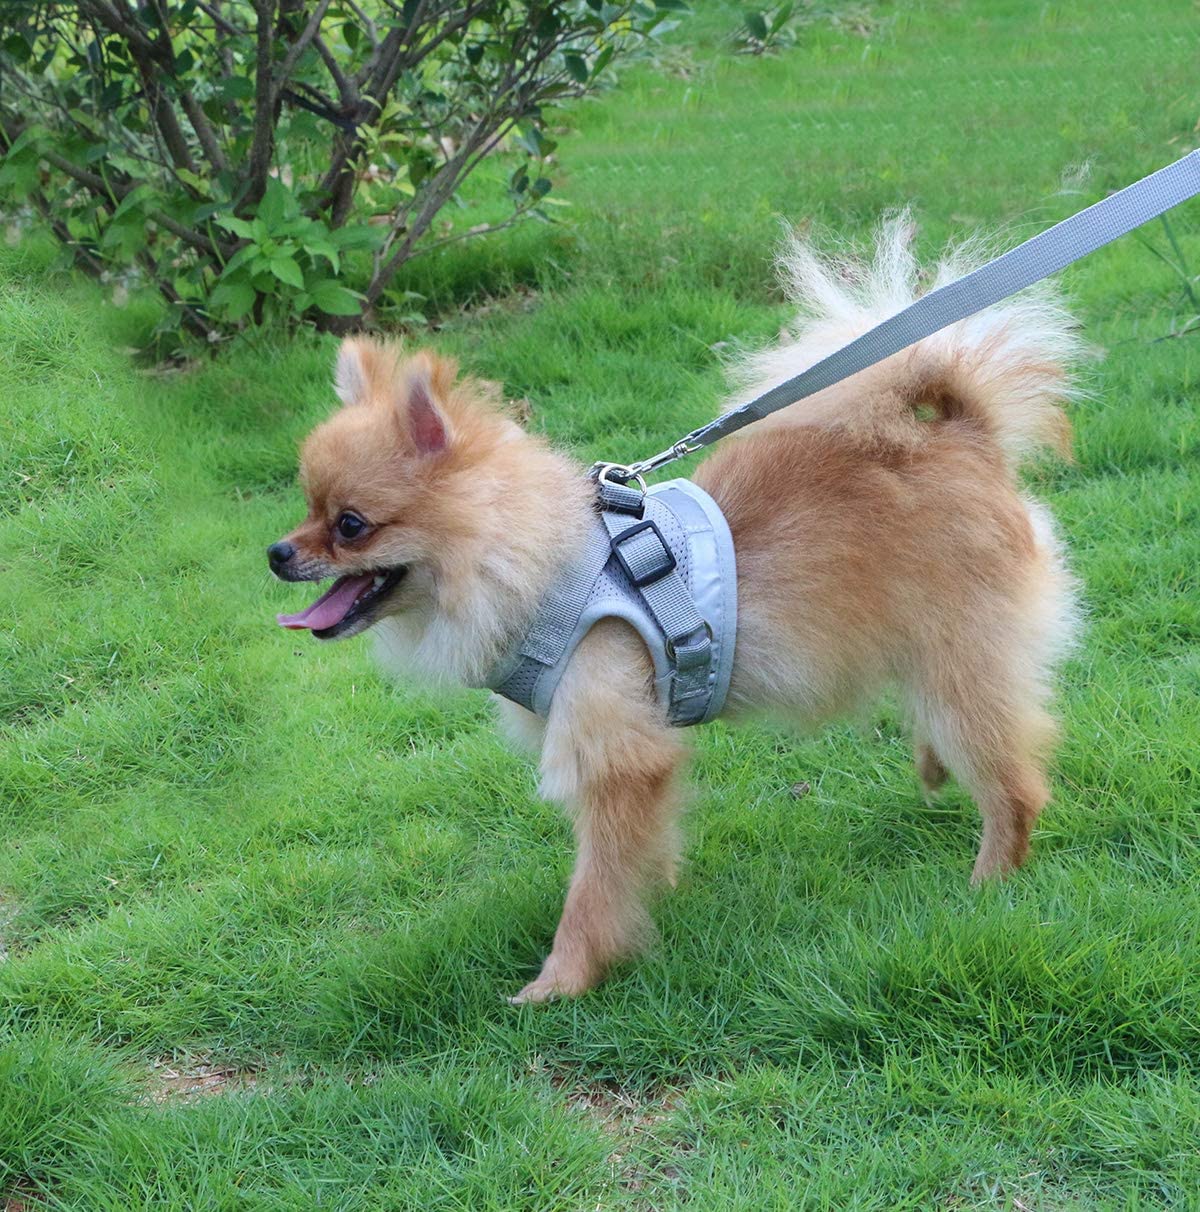  QiCheng&LYS Chaleco de Viaje Regular de Malla Transpirable con Cinturón de Seguridad para Perros y Gatos Chaleco de Seguridad para Mascotas (Gris, M) 